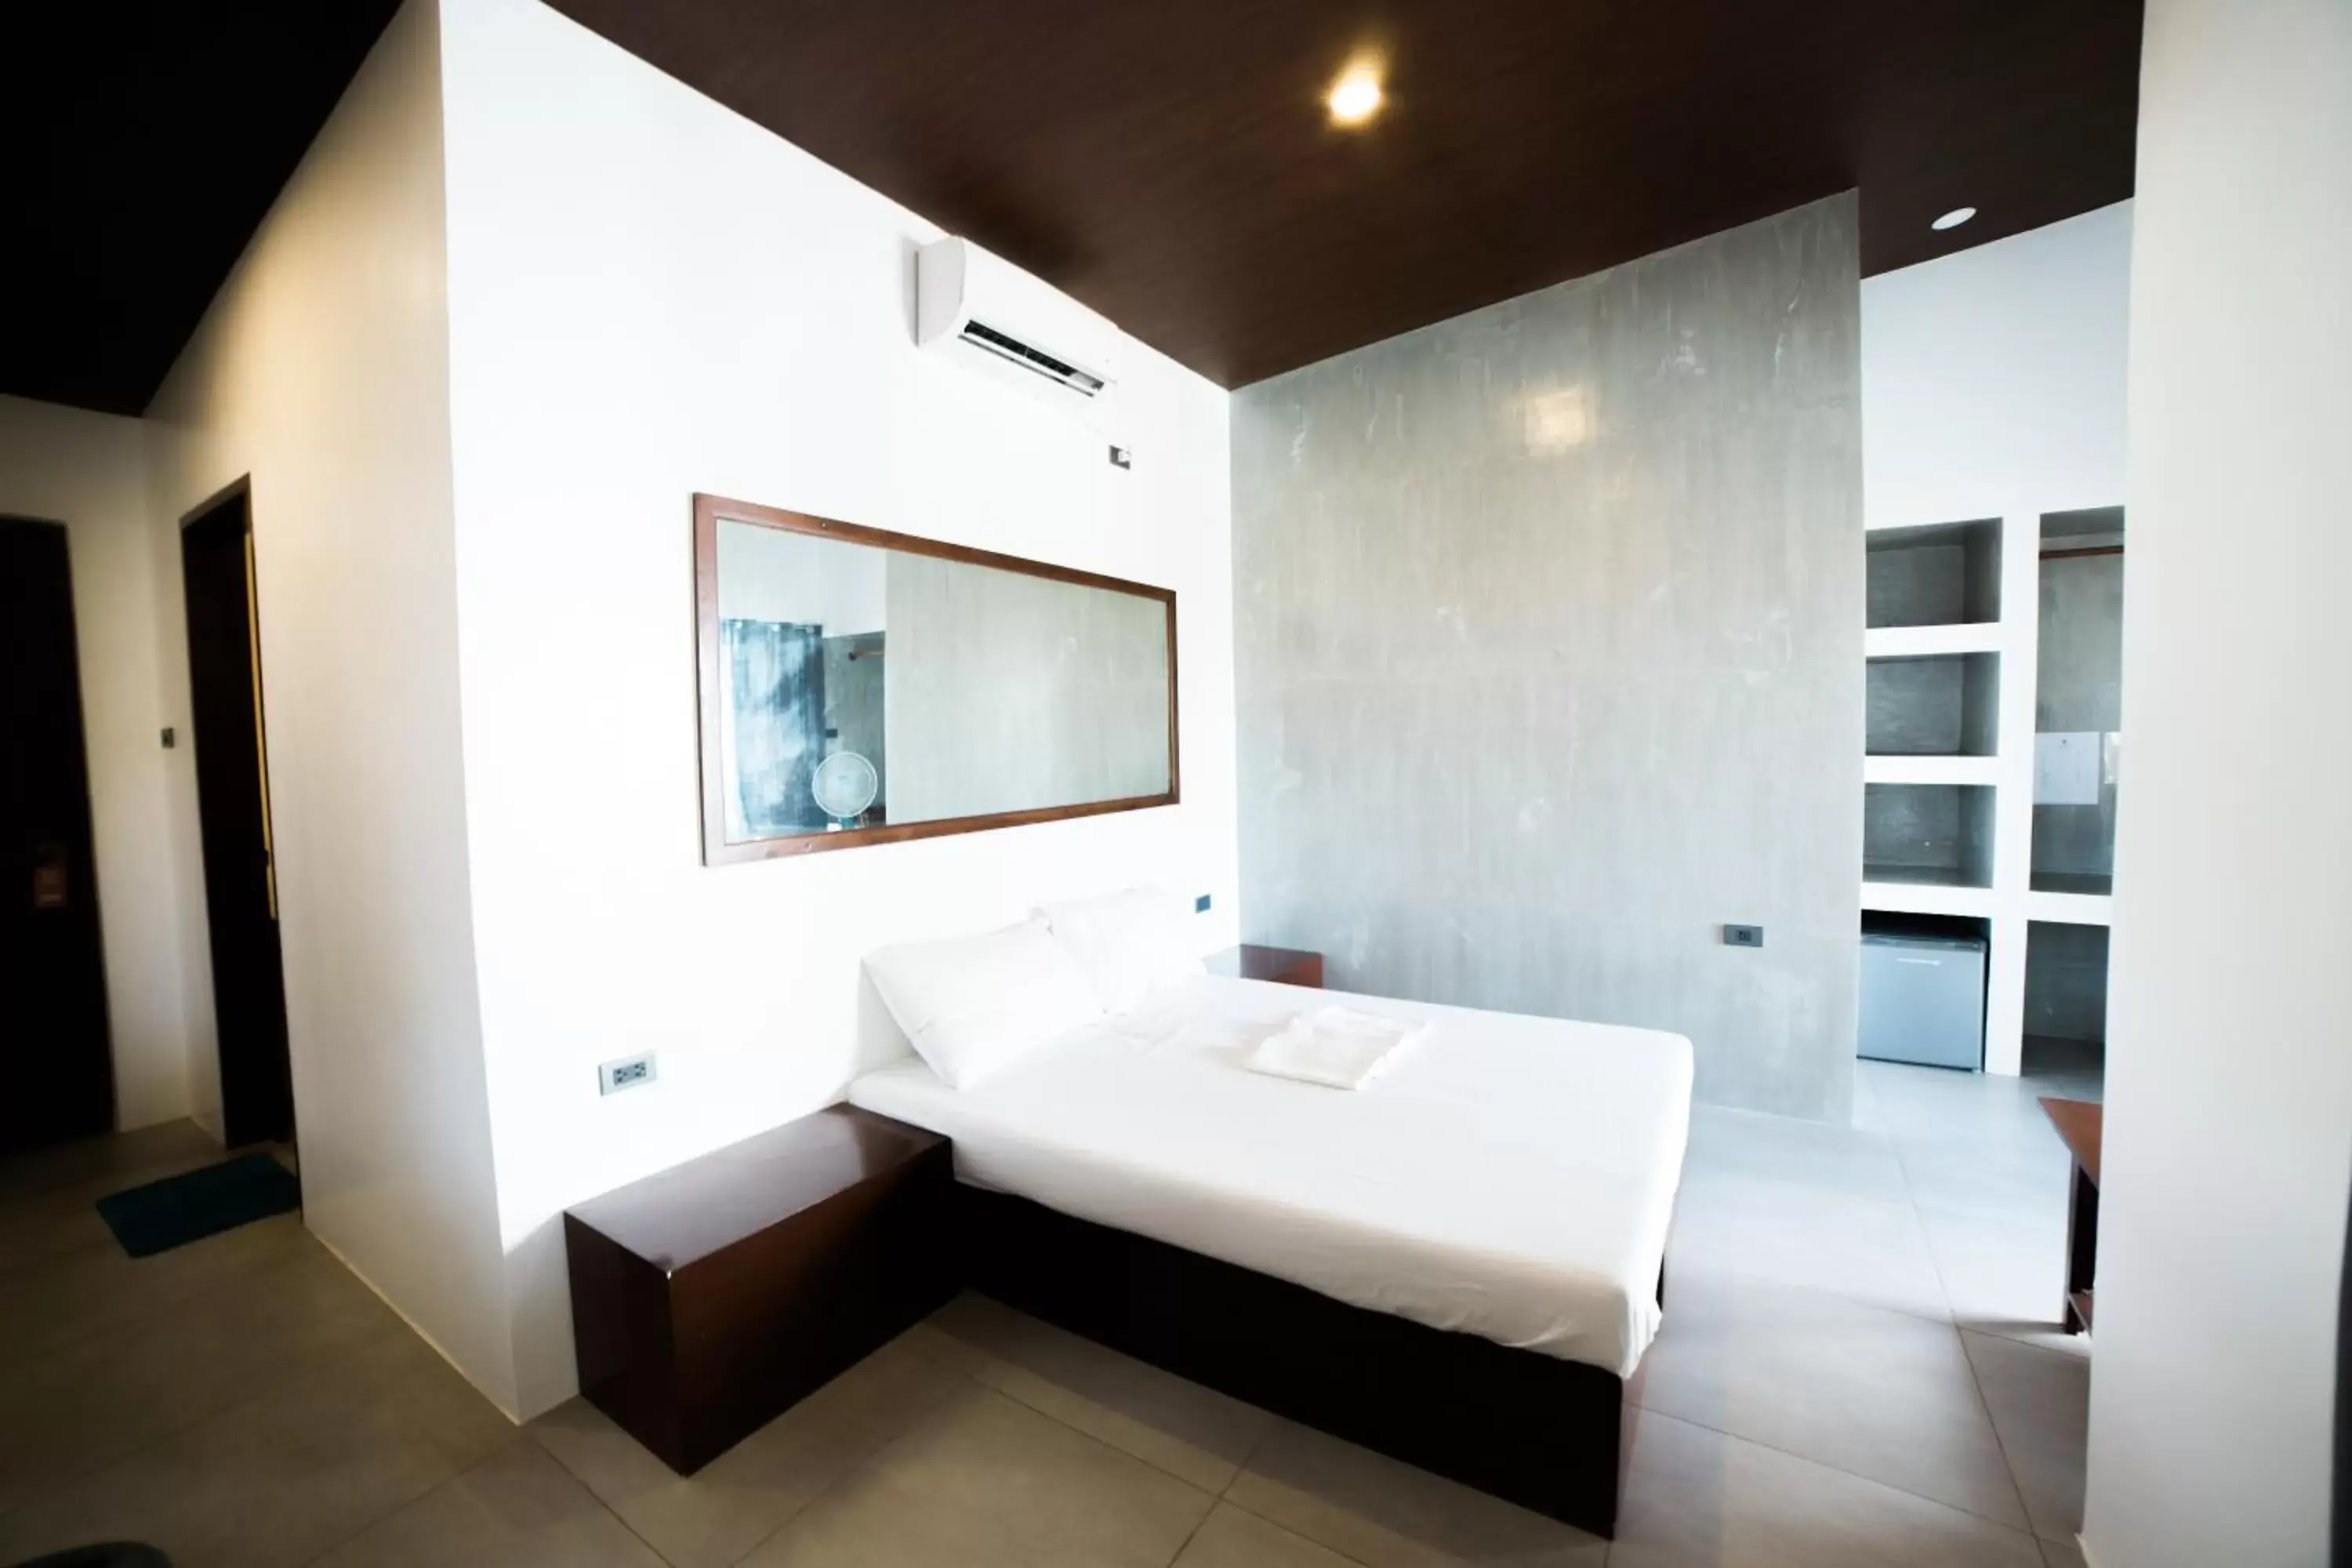 Bed in Amihan Resort